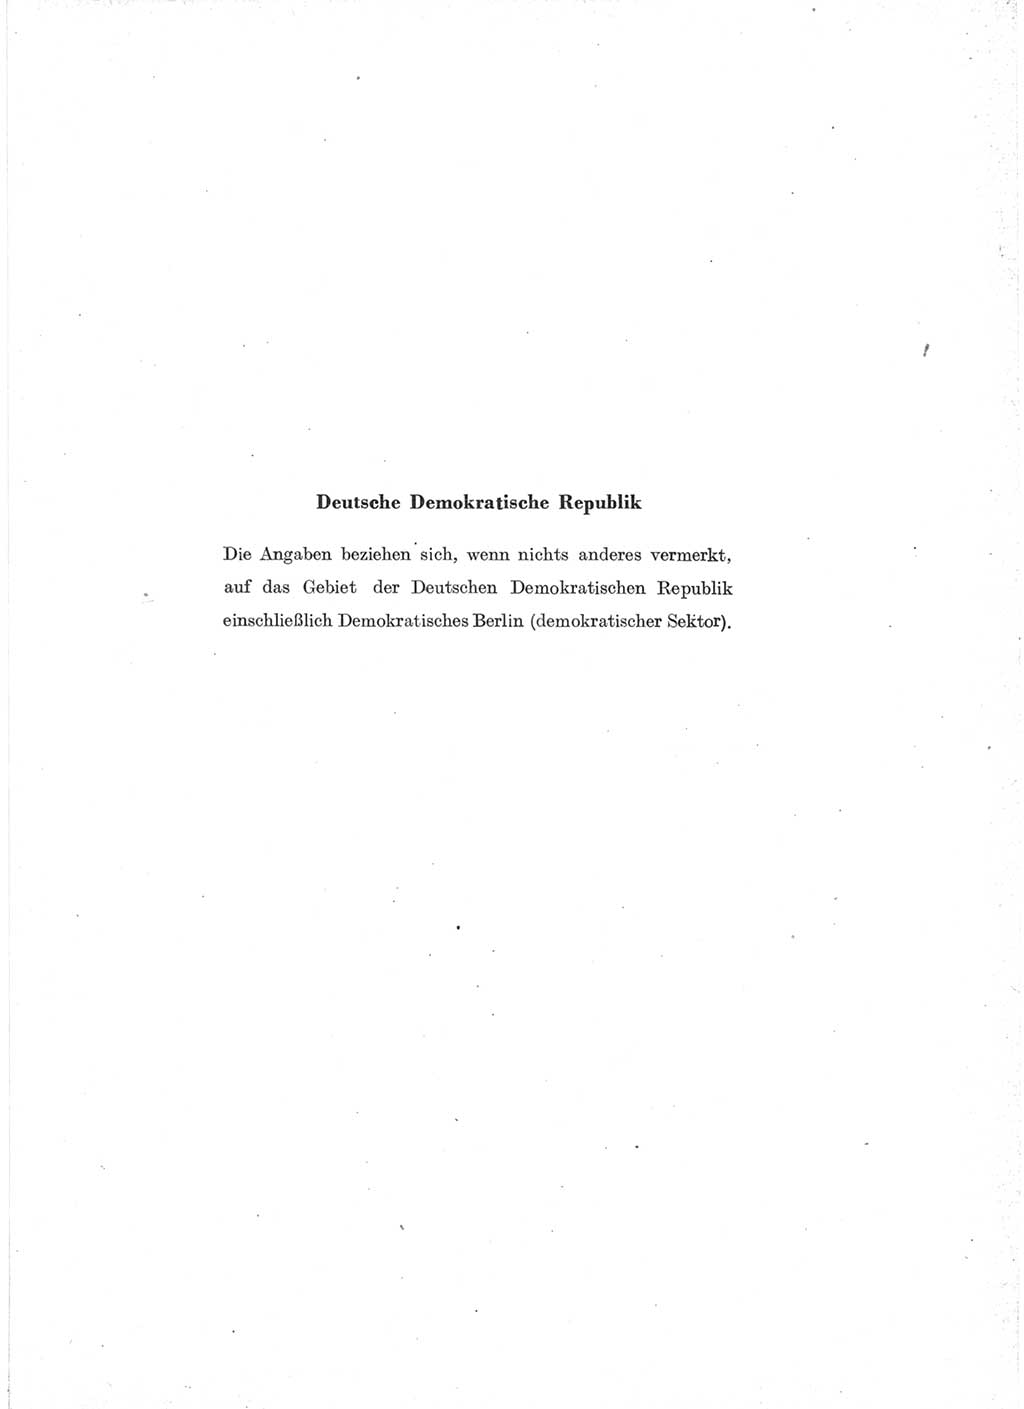 Statistisches Jahrbuch der Deutschen Demokratischen Republik (DDR) 1957, Seite 1 (Stat. Jb. DDR 1957, S. 1)